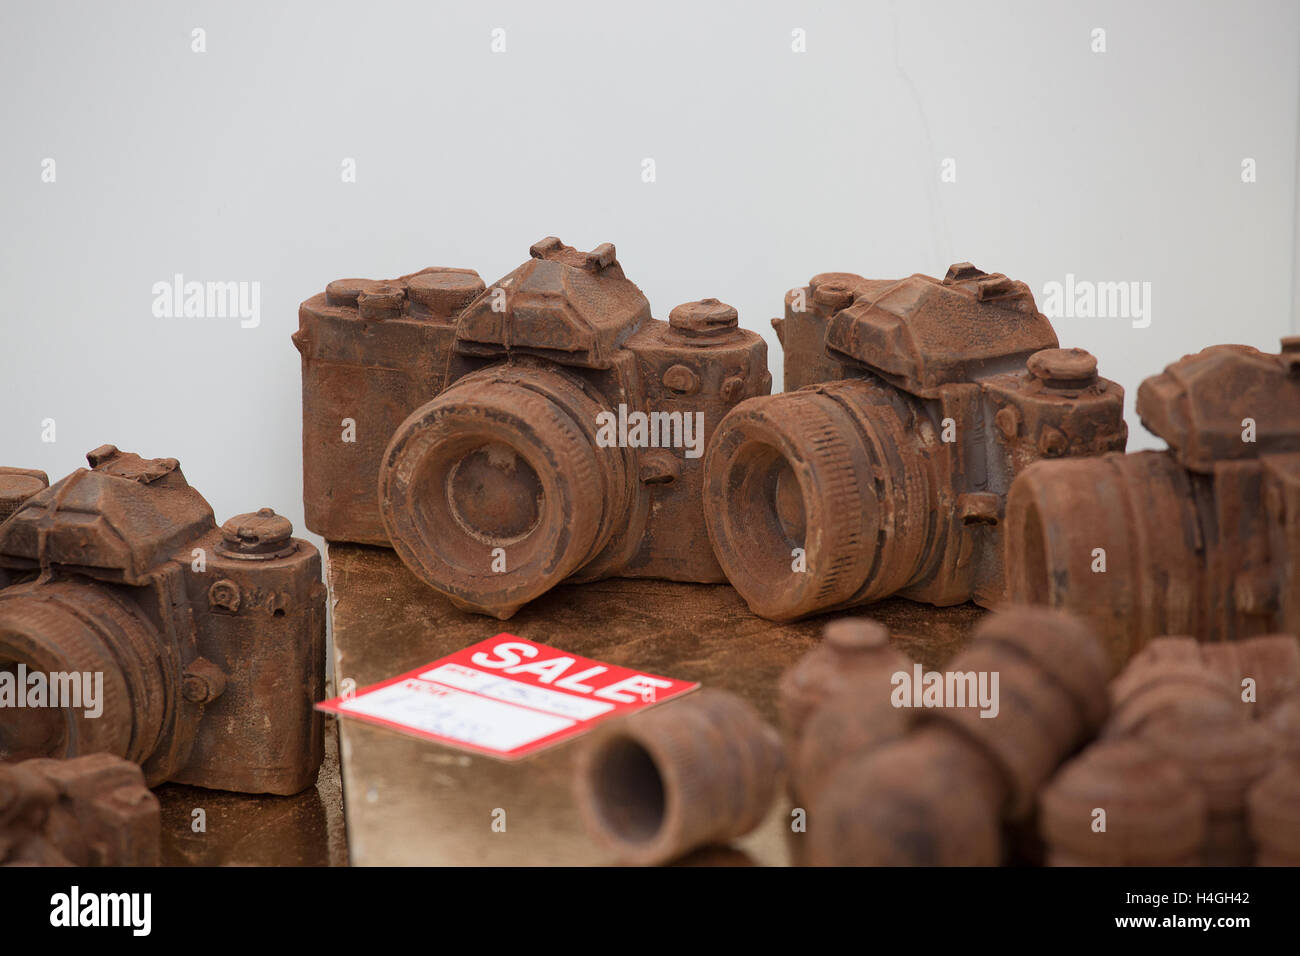 Foto Kamera aus dunkler Schokolade als Geschenk für Fotografen  Stockfotografie - Alamy